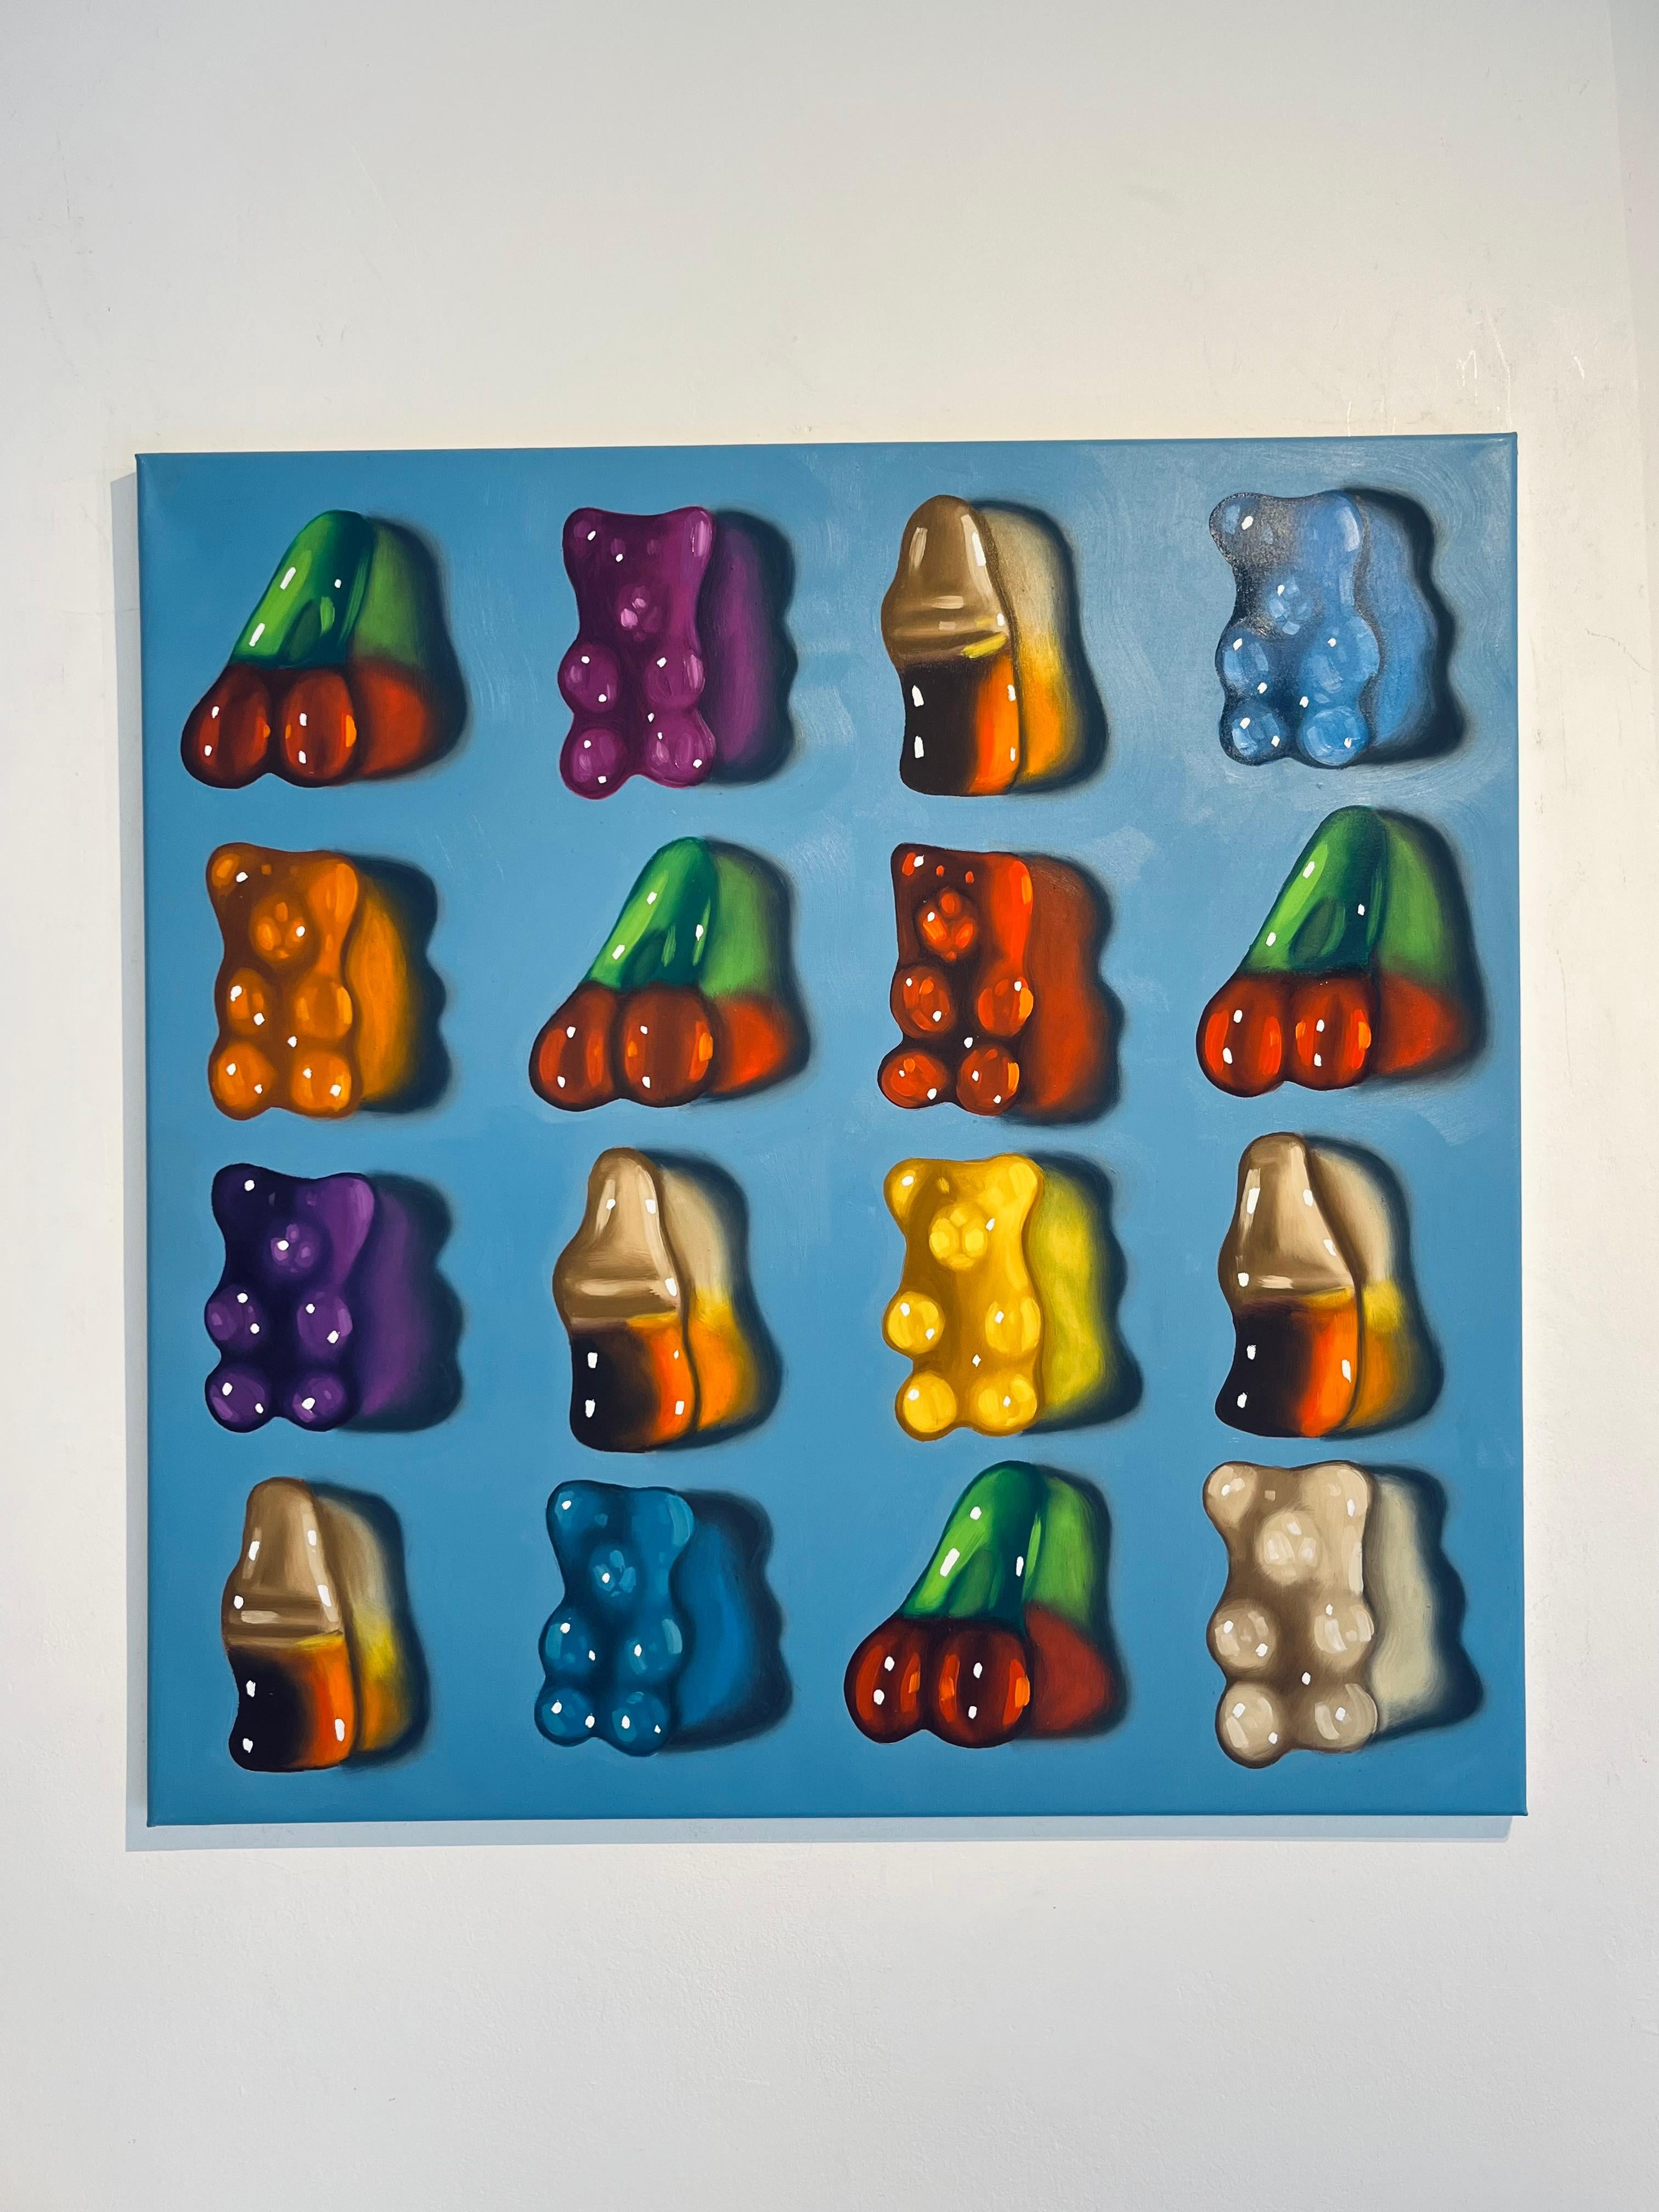 Bonbons in Blau-originale hyperrealistische Stillleben Ölgemälde-zeitgenössische Kunst (Abstrakter Impressionismus), Art, von Ian Bertolucci